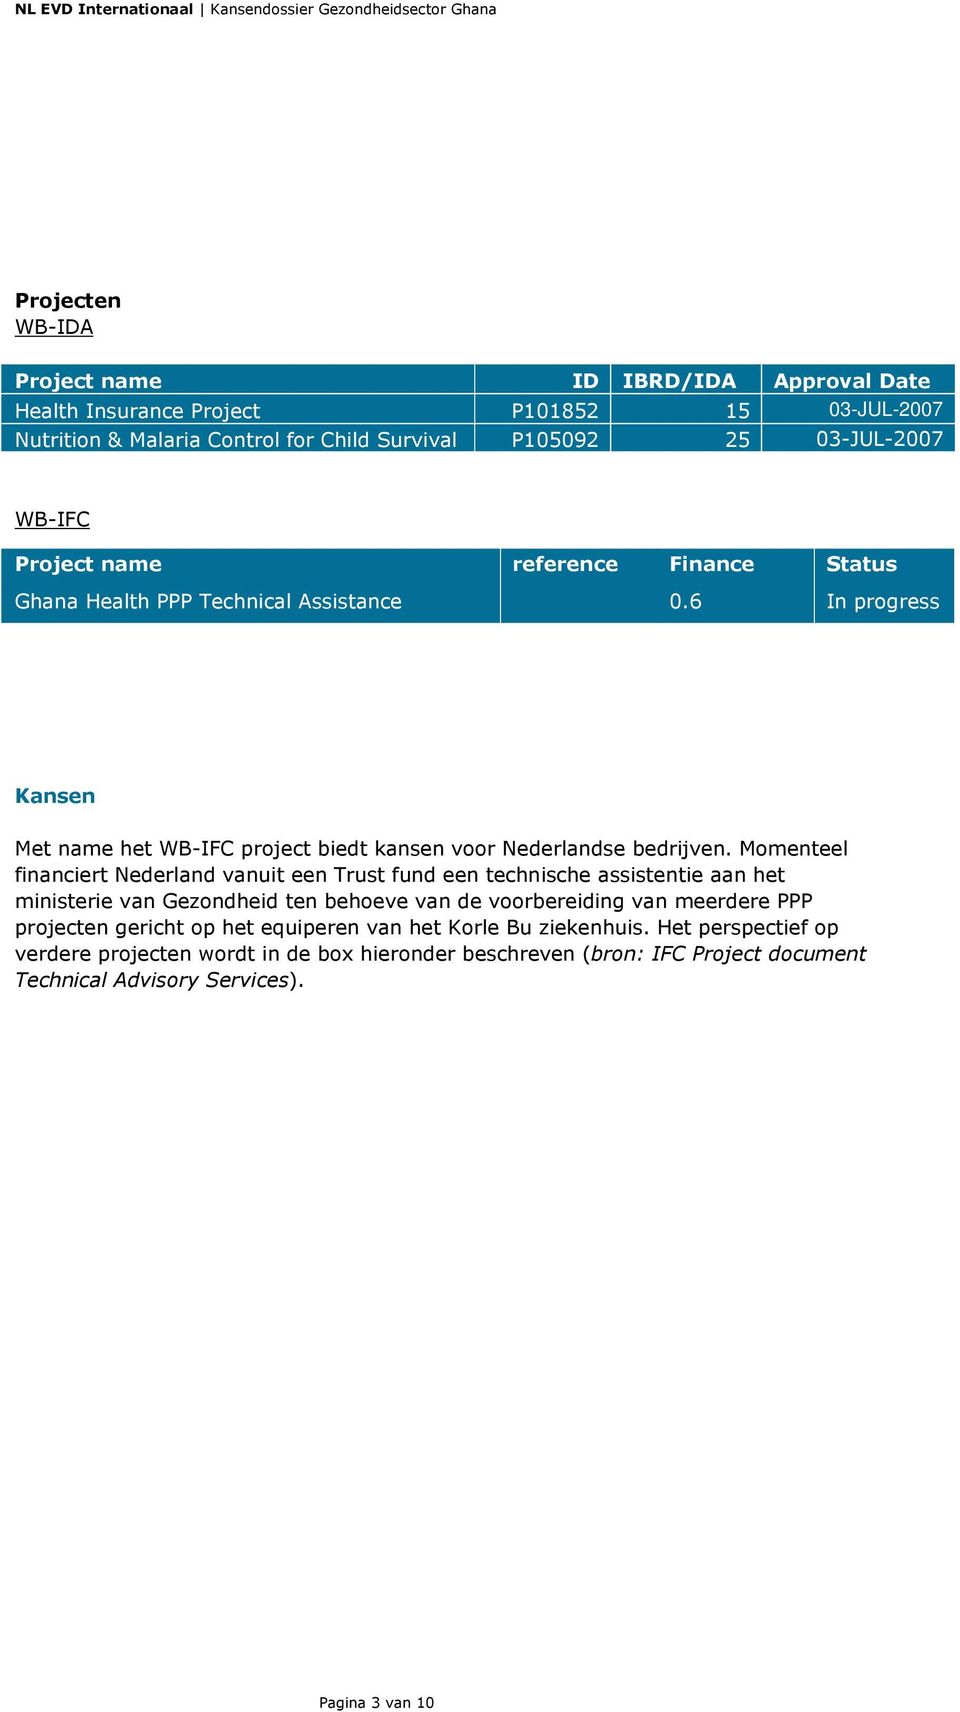 Momenteel financiert Nederland vanuit een Trust fund een technische assistentie aan het ministerie van Gezondheid ten behoeve van de voorbereiding van meerdere PPP projecten